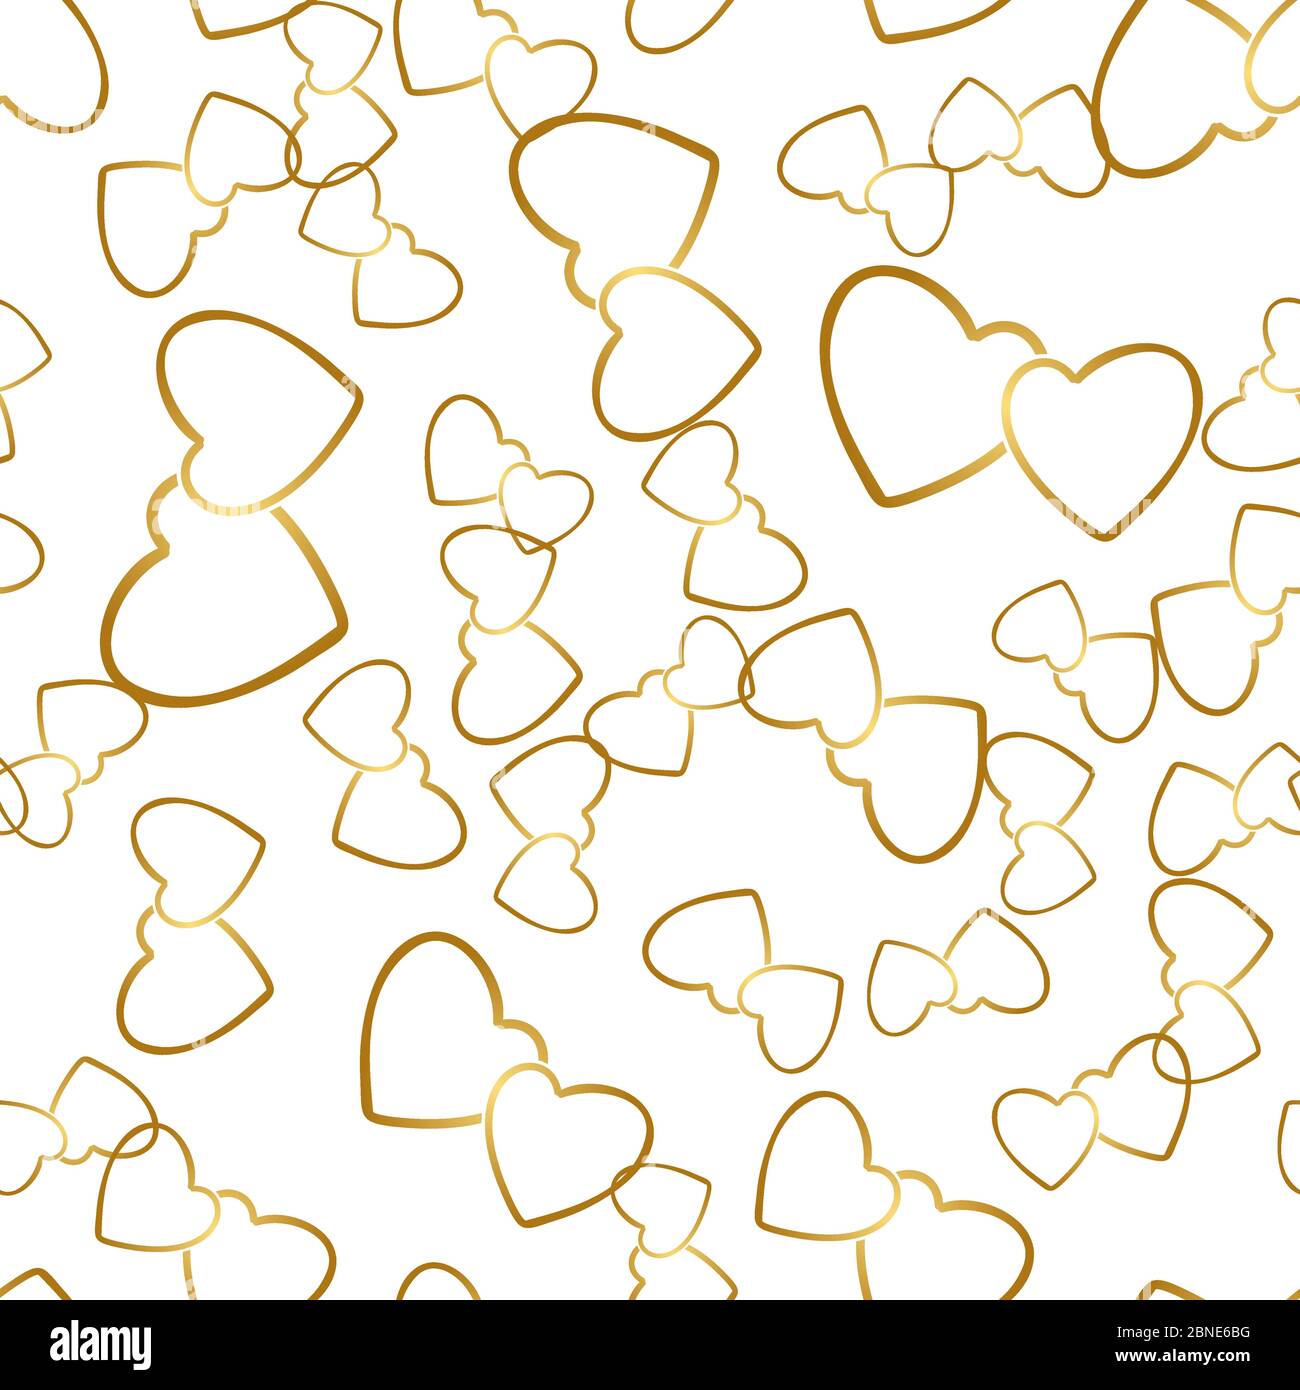 Motif sans coutures deux coeurs. Paires dorées de symboles de coeur placées de façon aléatoire sur fond blanc. Texture d'emballage romantique pour cadeau de Saint-Valentin ou gr Illustration de Vecteur